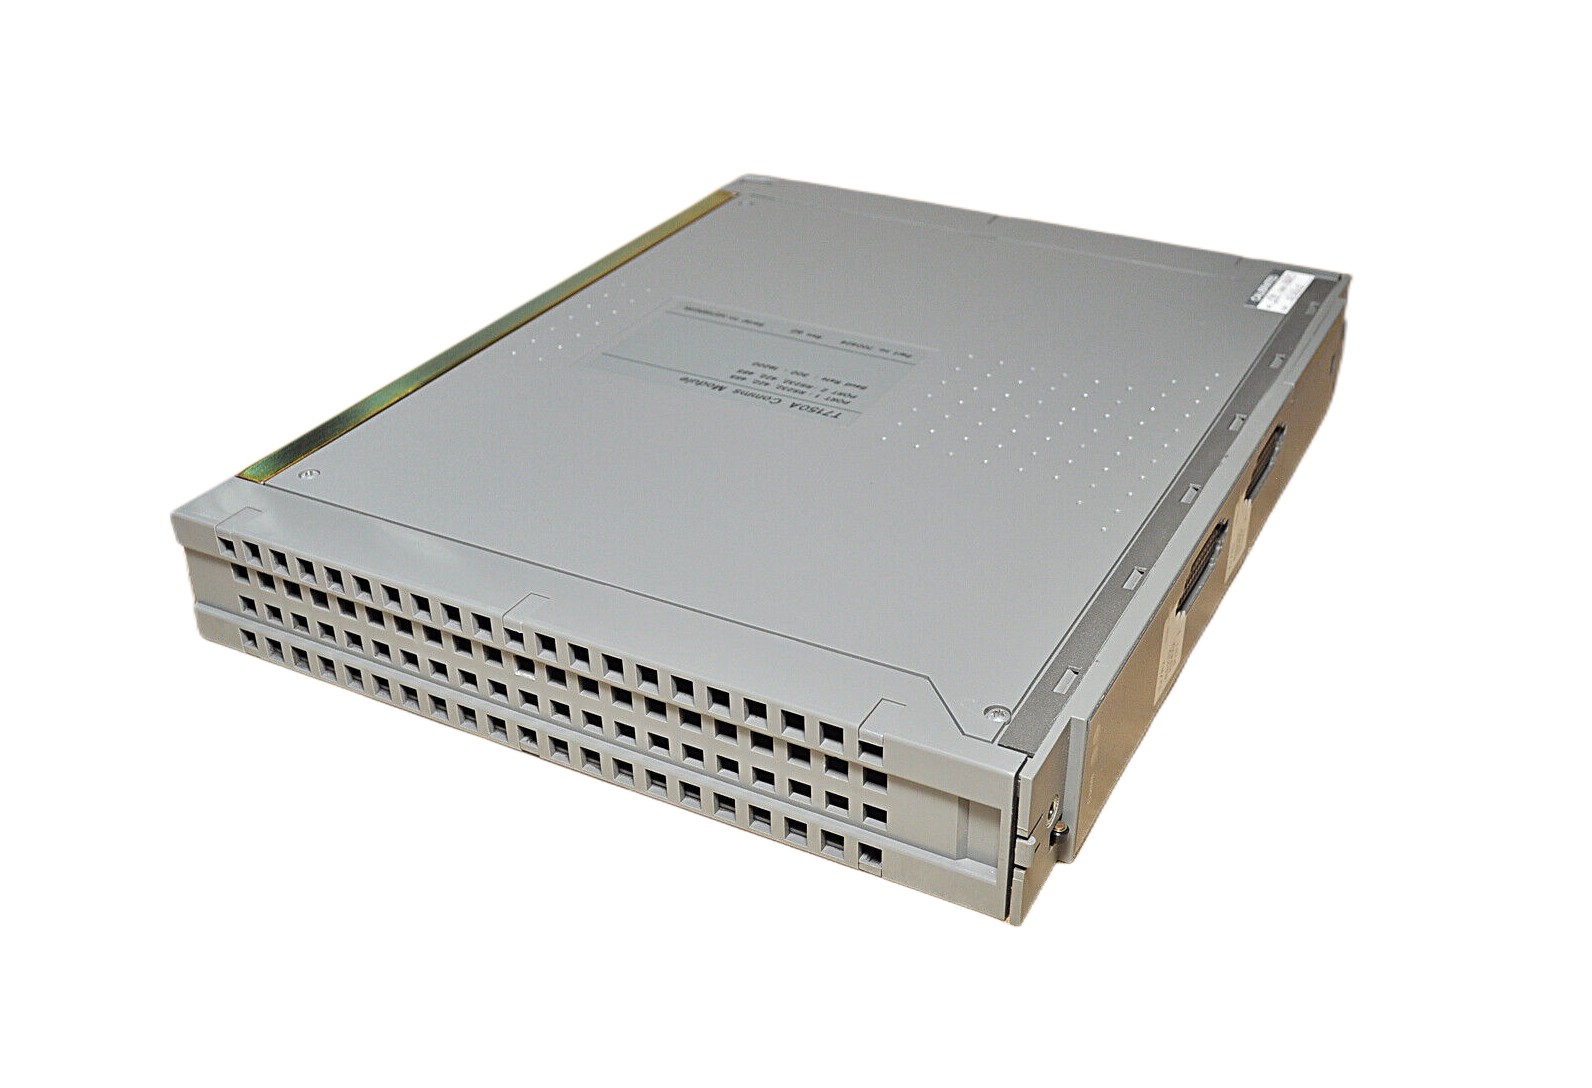 ICS TRIPLEX T3470A CPU module